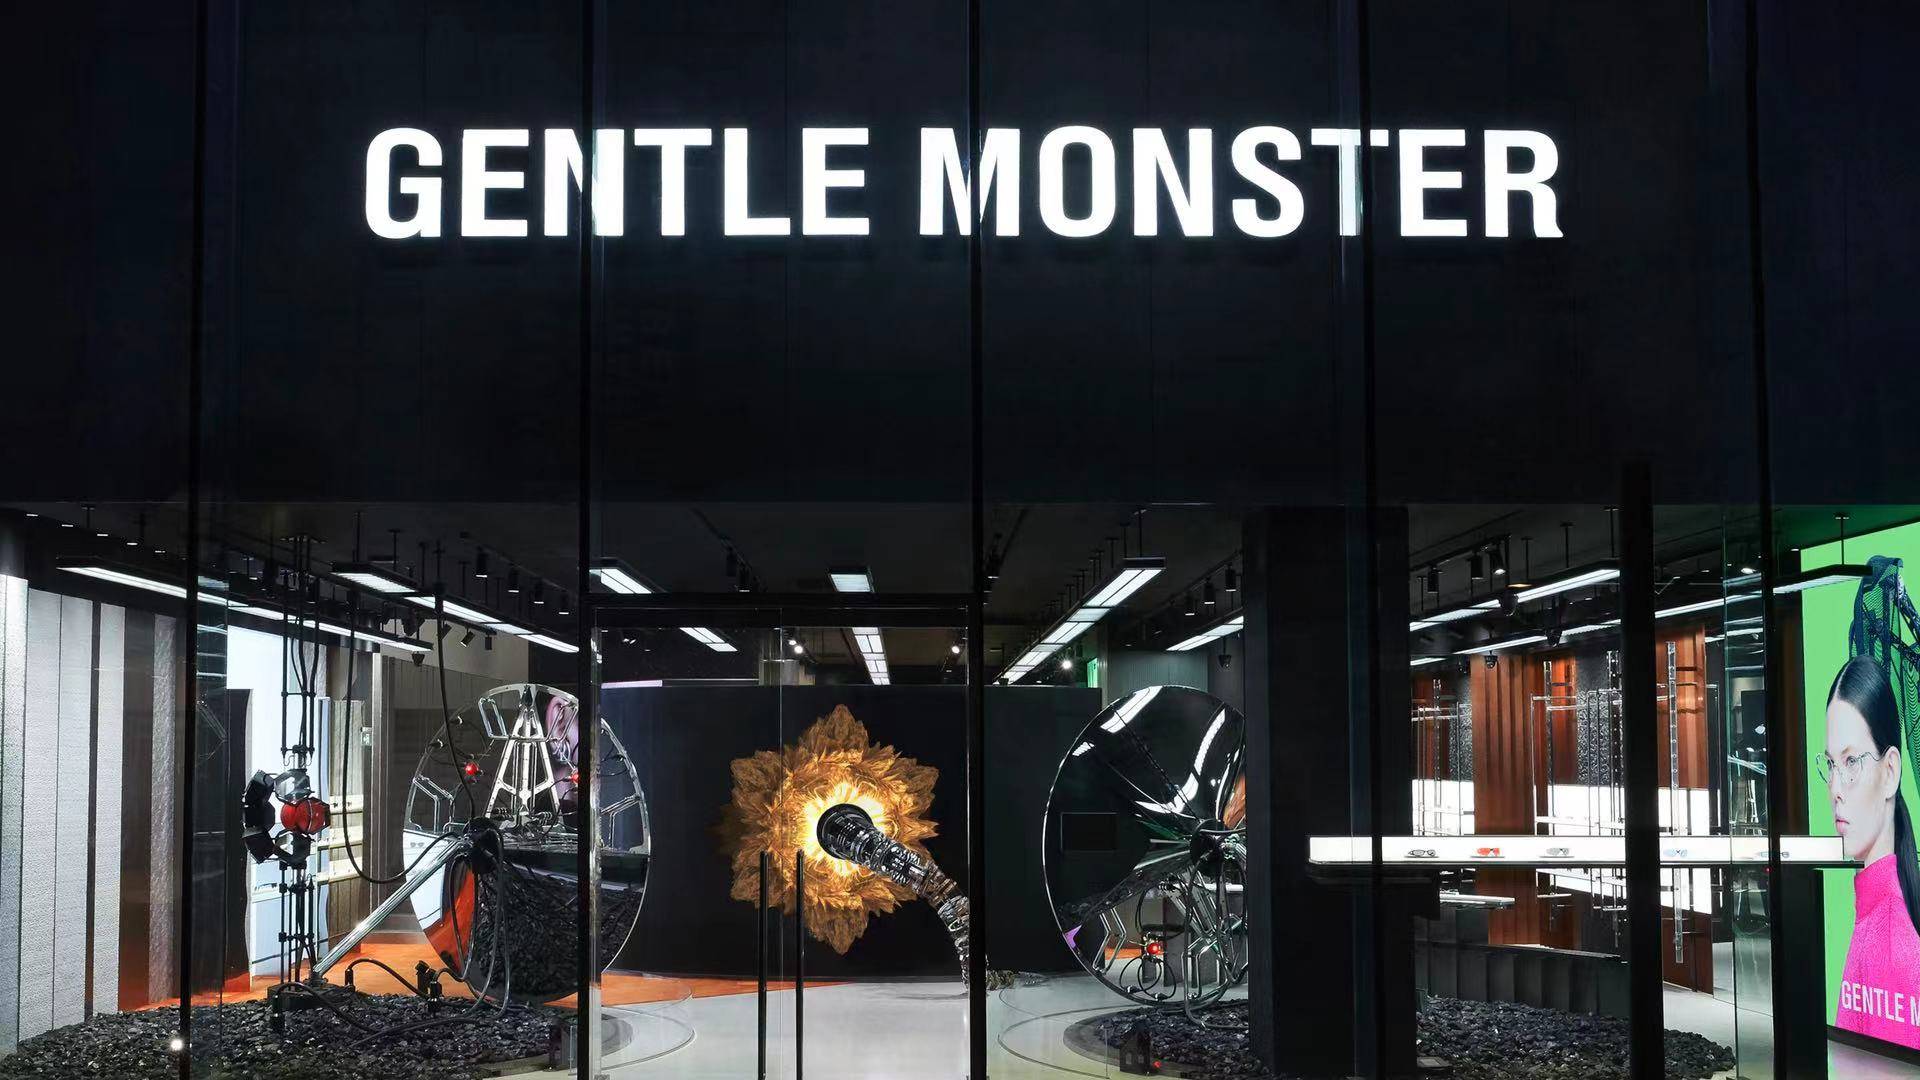 积蓄力量 凝聚生长 gentle monster北京三里屯旗舰店重装开业